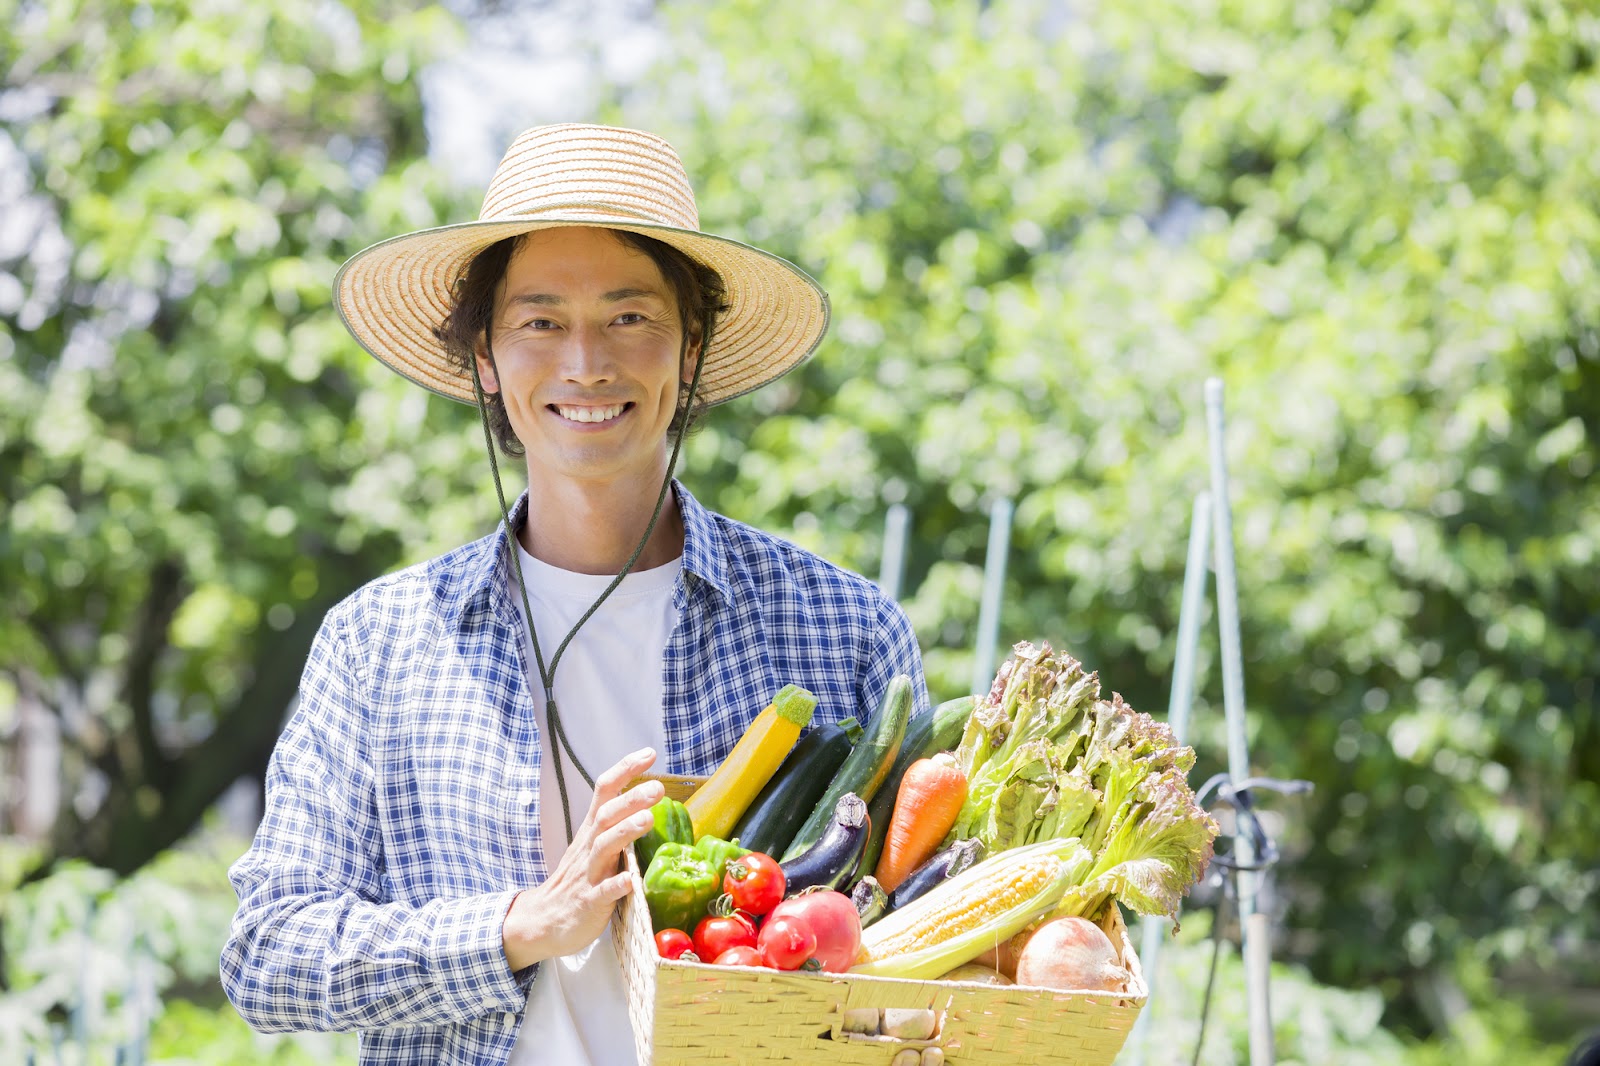 【農家のネット販売】野菜をネット販売するときにおすすめの方法・サイトを紹介します